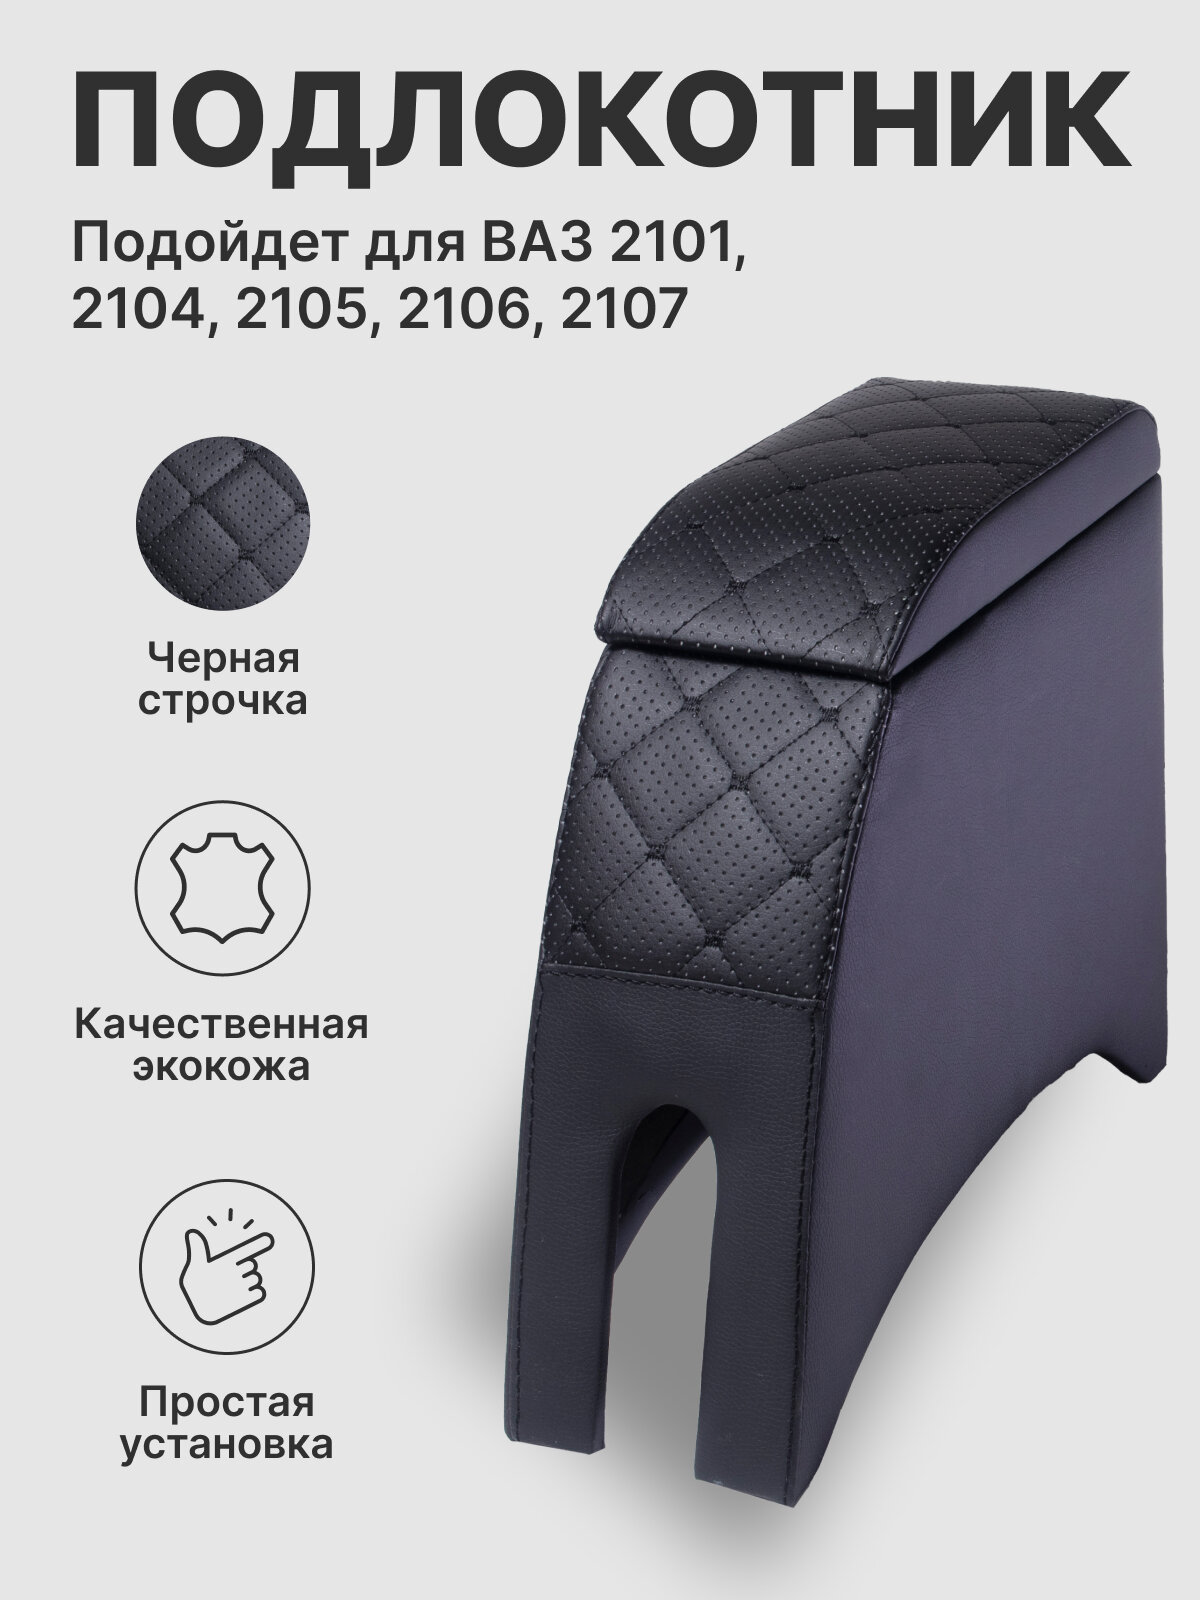 Подлокотник для ВАЗ 2101 - 2107 с рисунком "заточка"